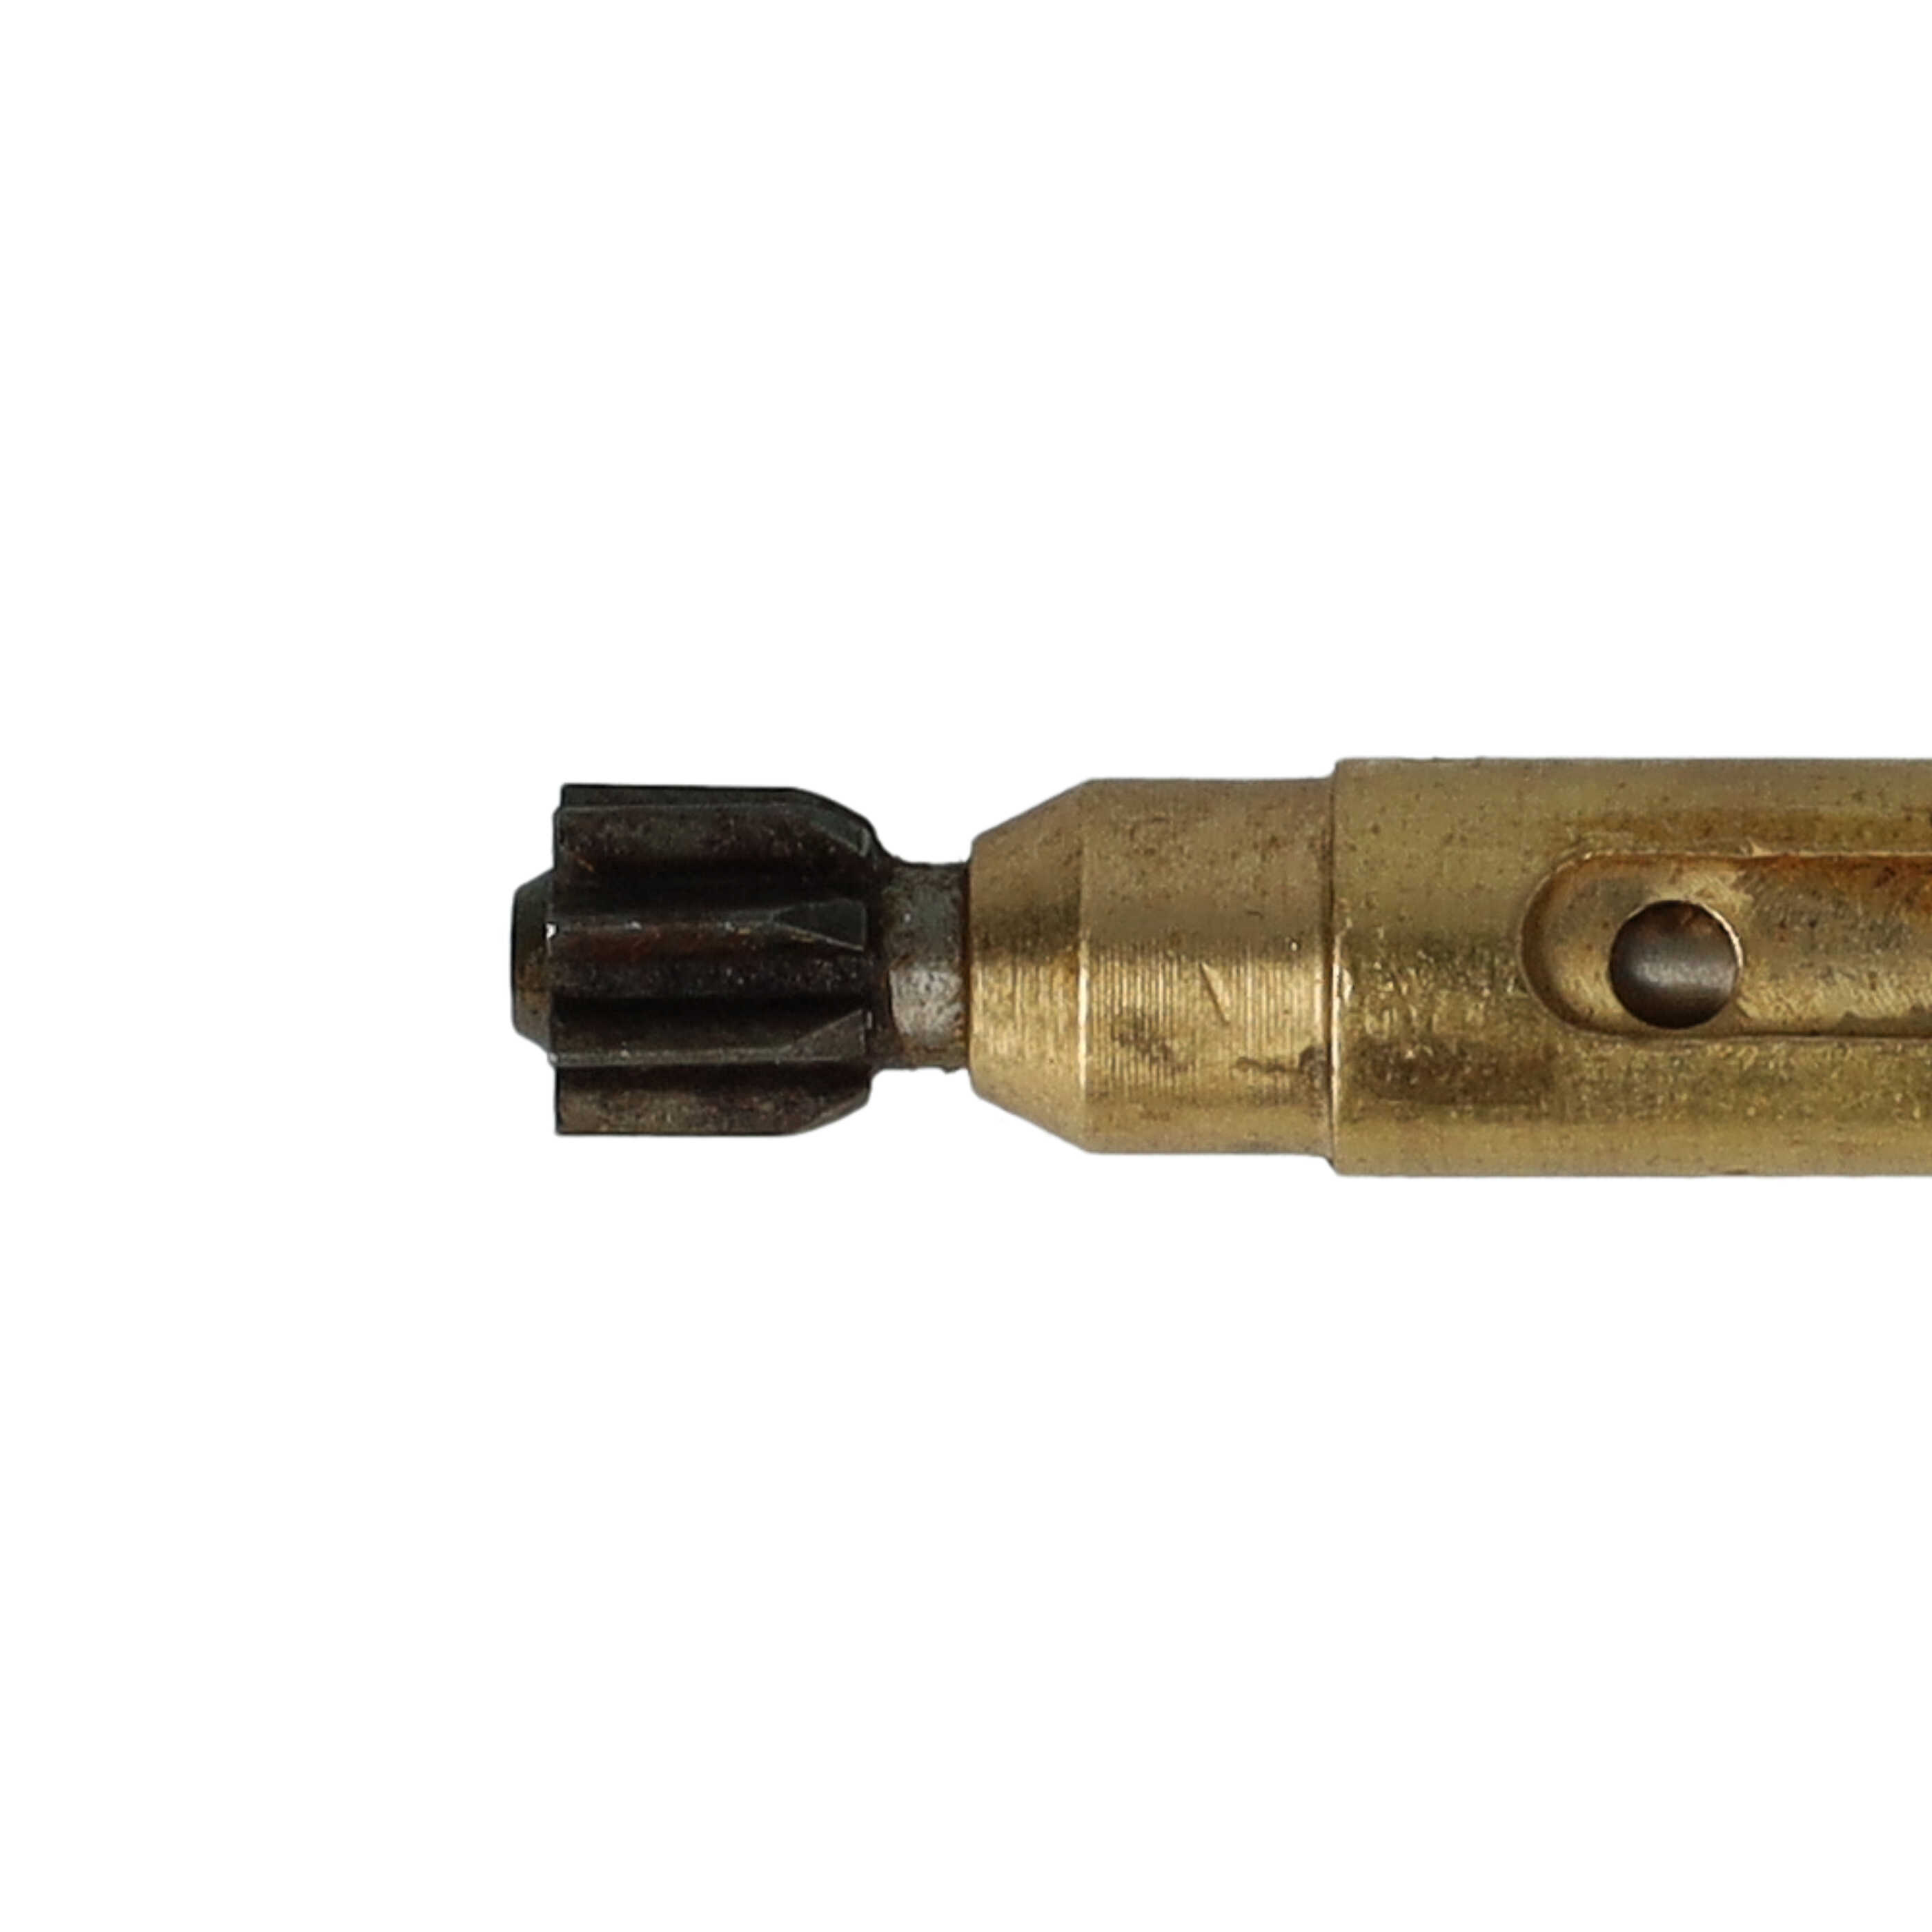 Pompka oleju zamiennik Stihl 1123 640 3200 - żelazo, średnica 0,8 cm, regulowana 